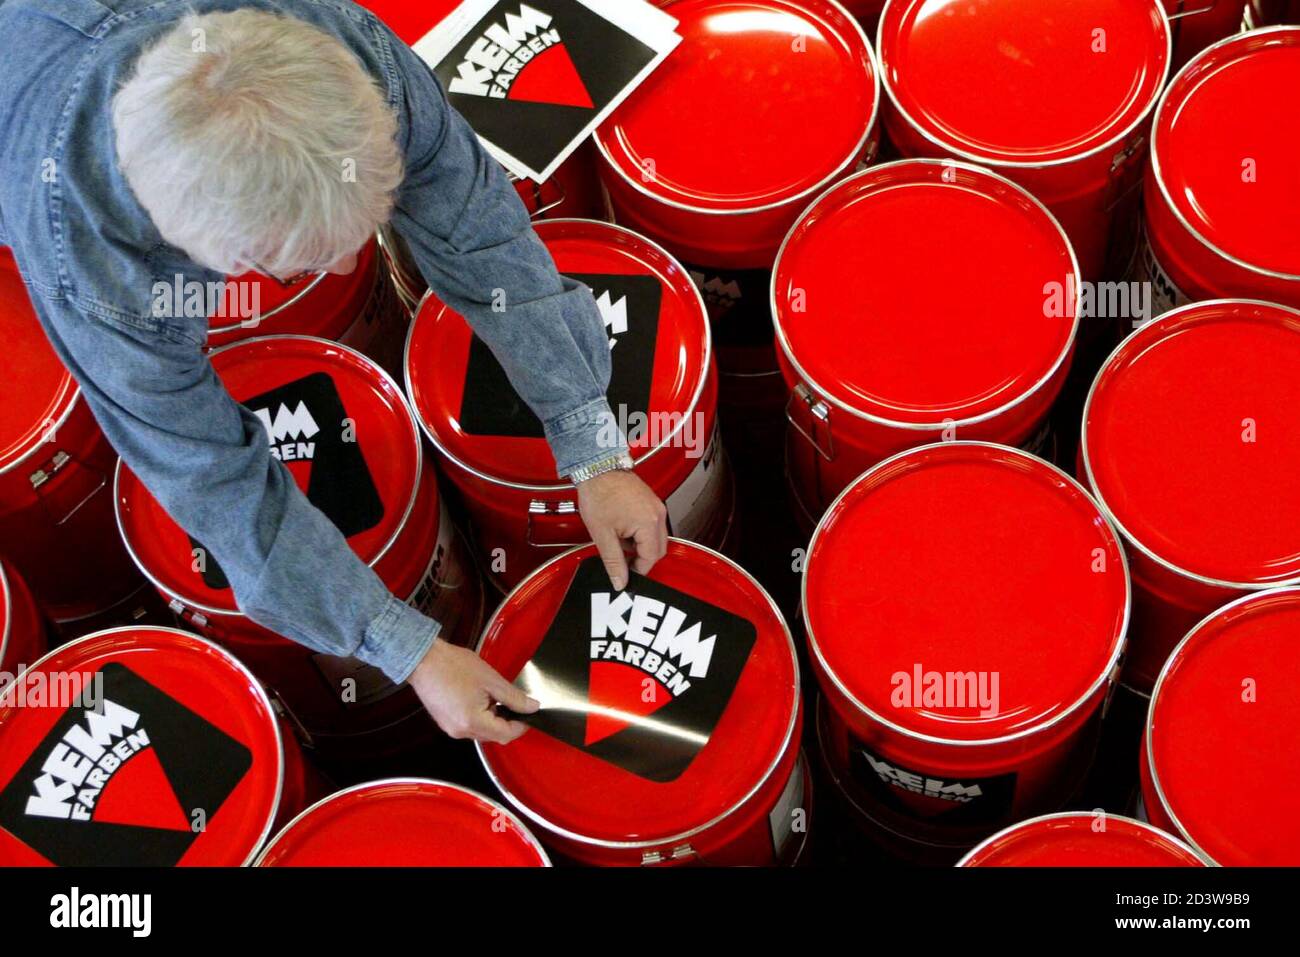 Ein Mitarbeiter der deutschen Malerei Maker Keimfarben behebt Unternehmen  Aufkleber auf Eimer voller Farbe in Diedorf in der Nähe der bayerischen  Stadt Augsburg 24. April 2003. [Das Unternehmen, das Farbe für das